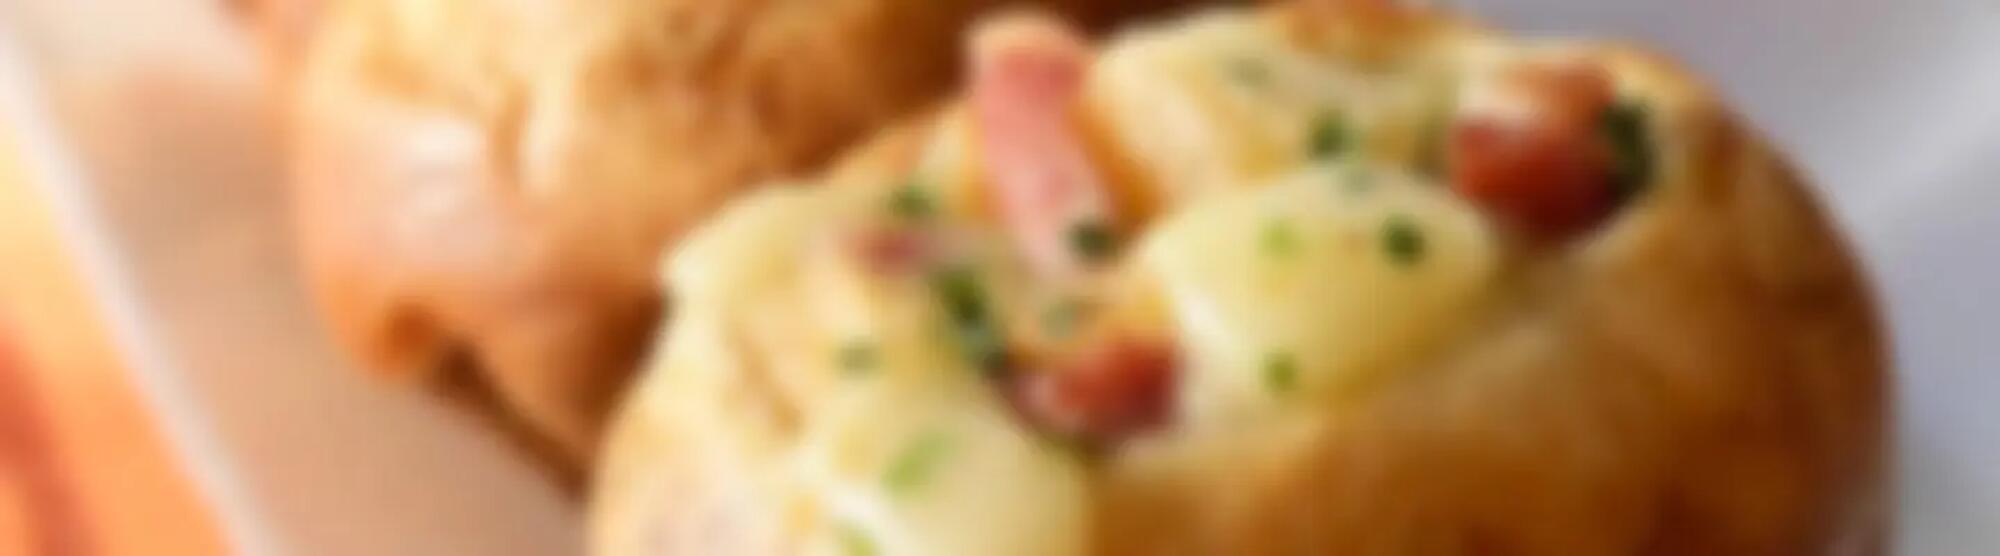 Recette : Brioches au fromage à raclette et petits lardons